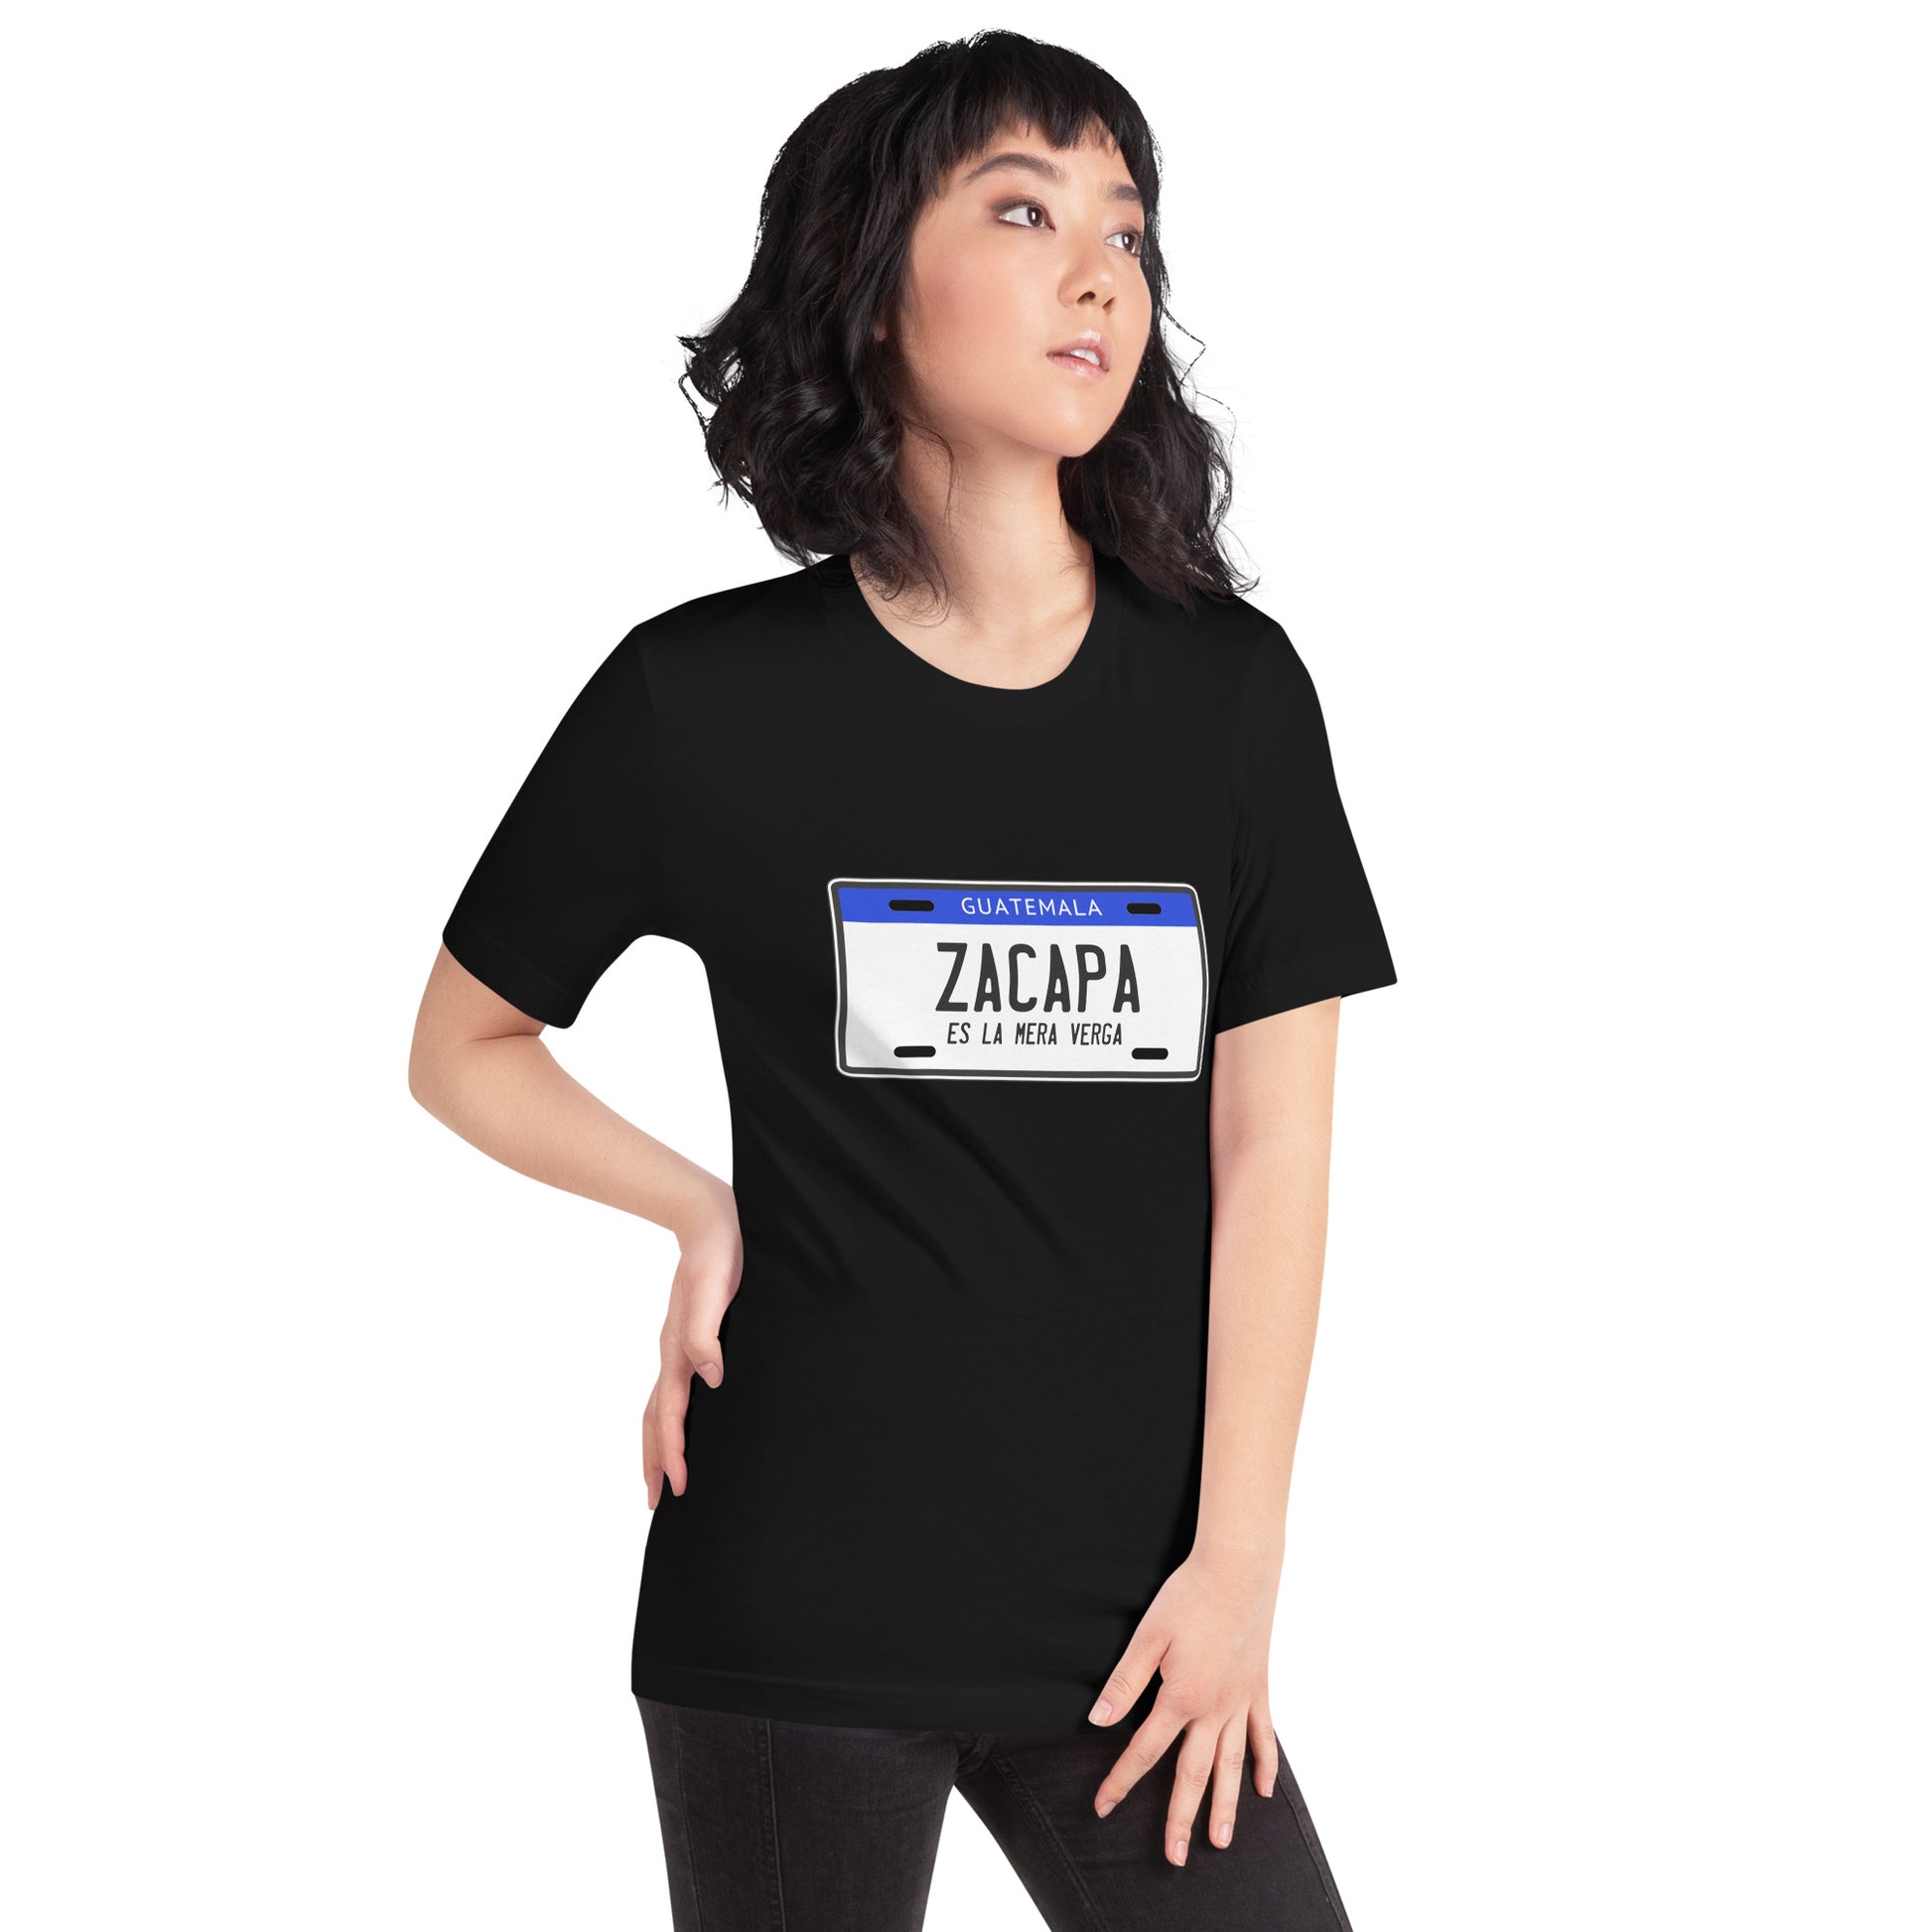 Playera Zacapa es la V, Descubre calidad excepcional y estampados duraderos. Encuentra estilo y orgullo en cada prenda.